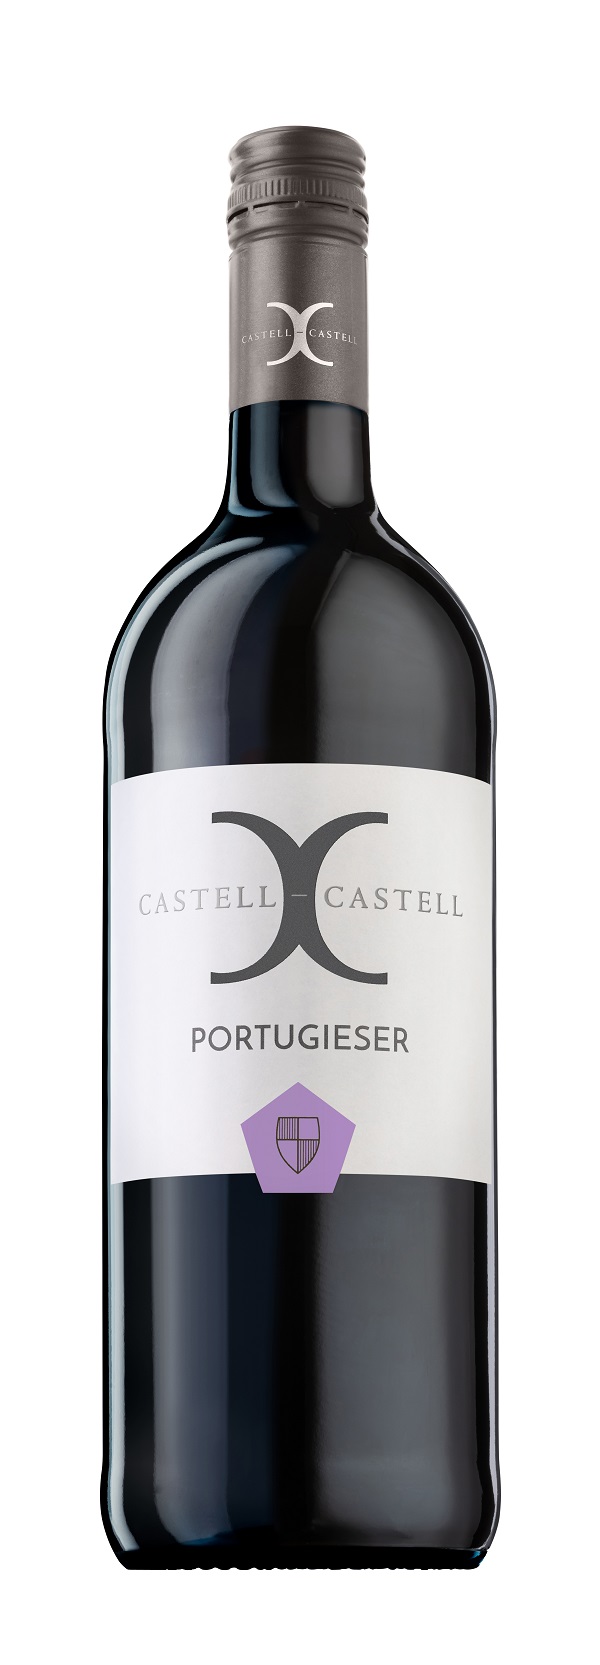 CASTELL-CASTELL Portugieser 2020